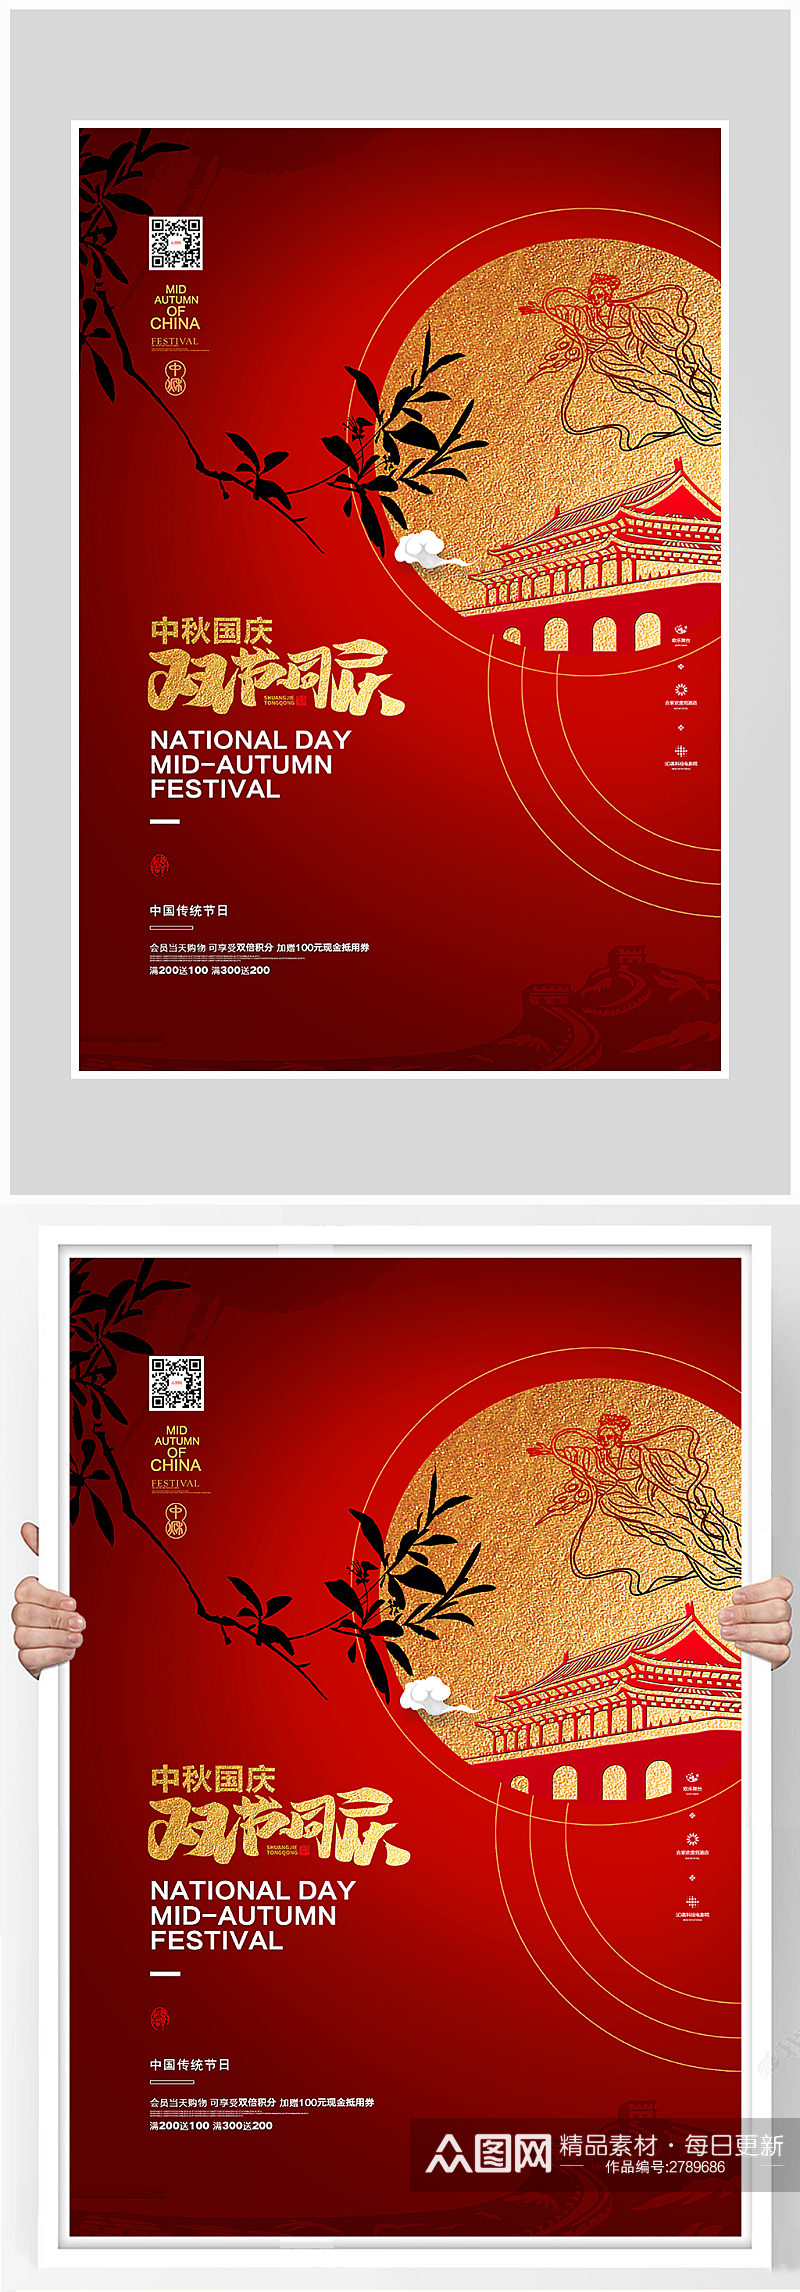 创意红色欢度国庆中秋节海报设计素材